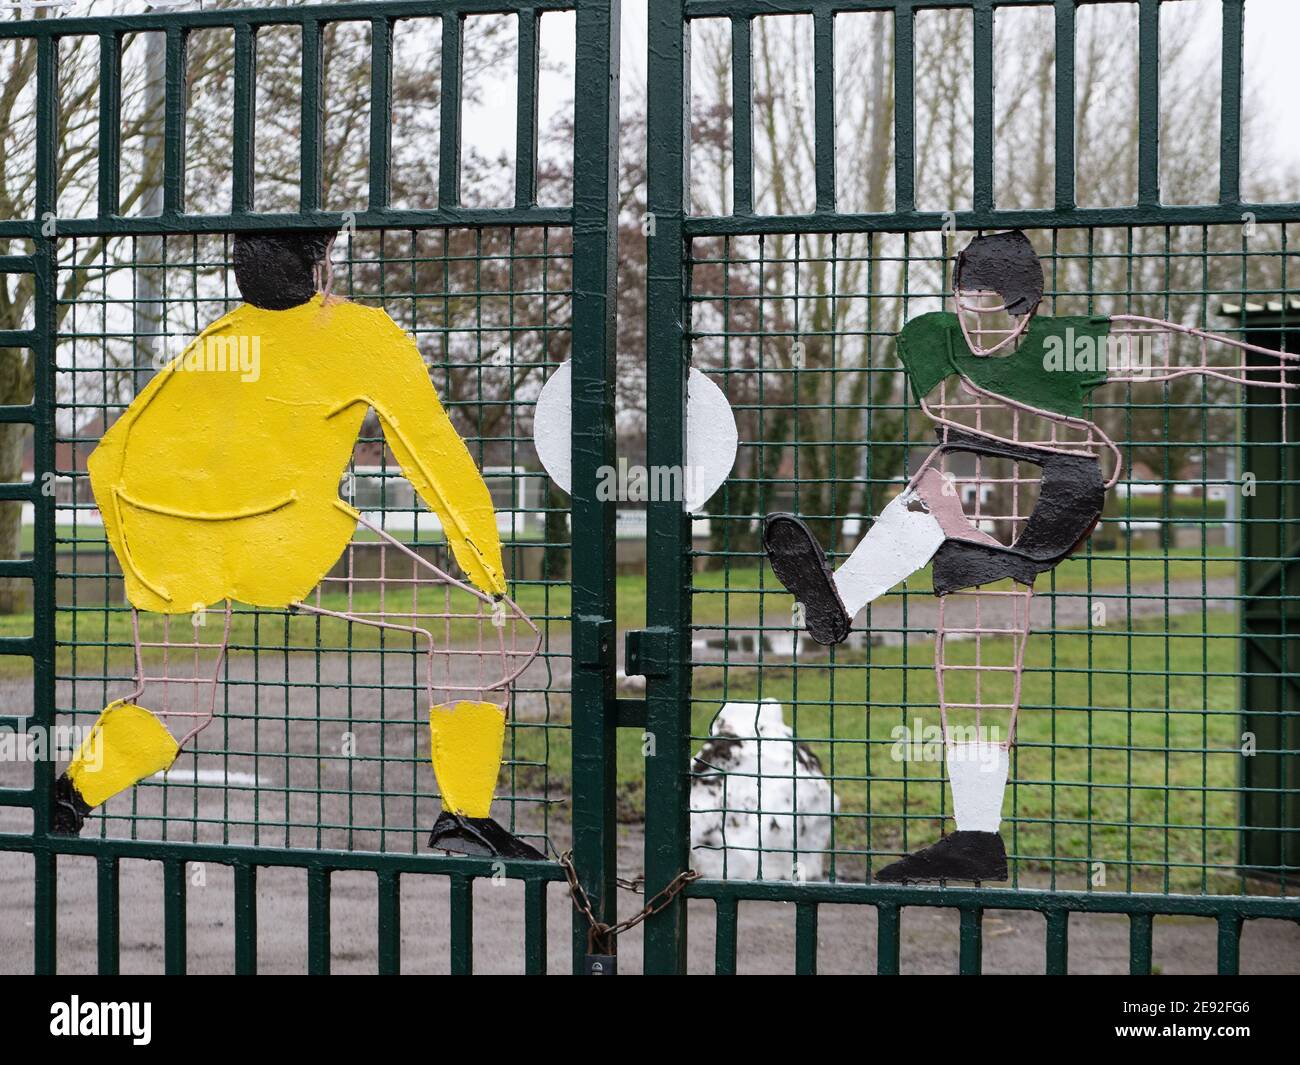 Eingangstore zum Westbury United Football Club, in dem die Spieler Skulpturen bemalt haben. Stockfoto